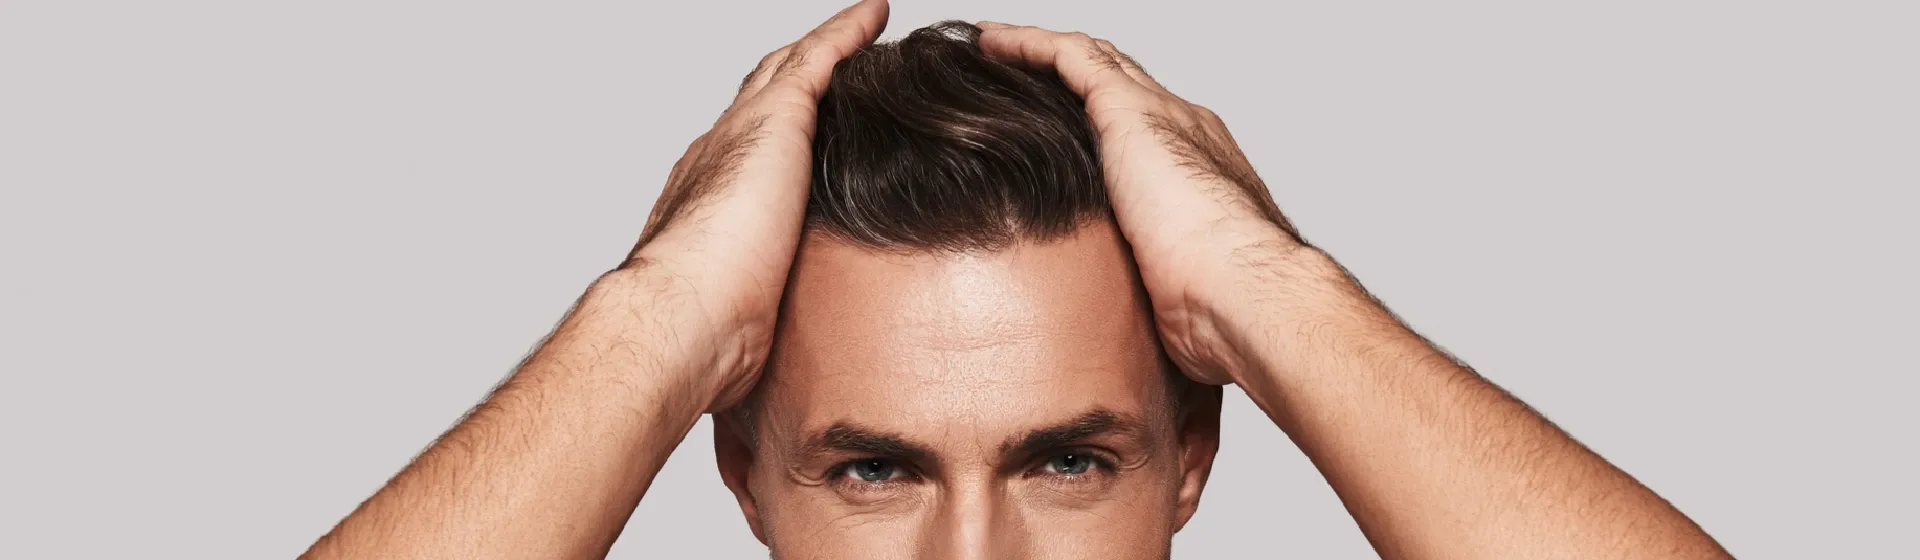 Homens: dicas e cuidados para um cabelo impecável - Bulbo Raiz